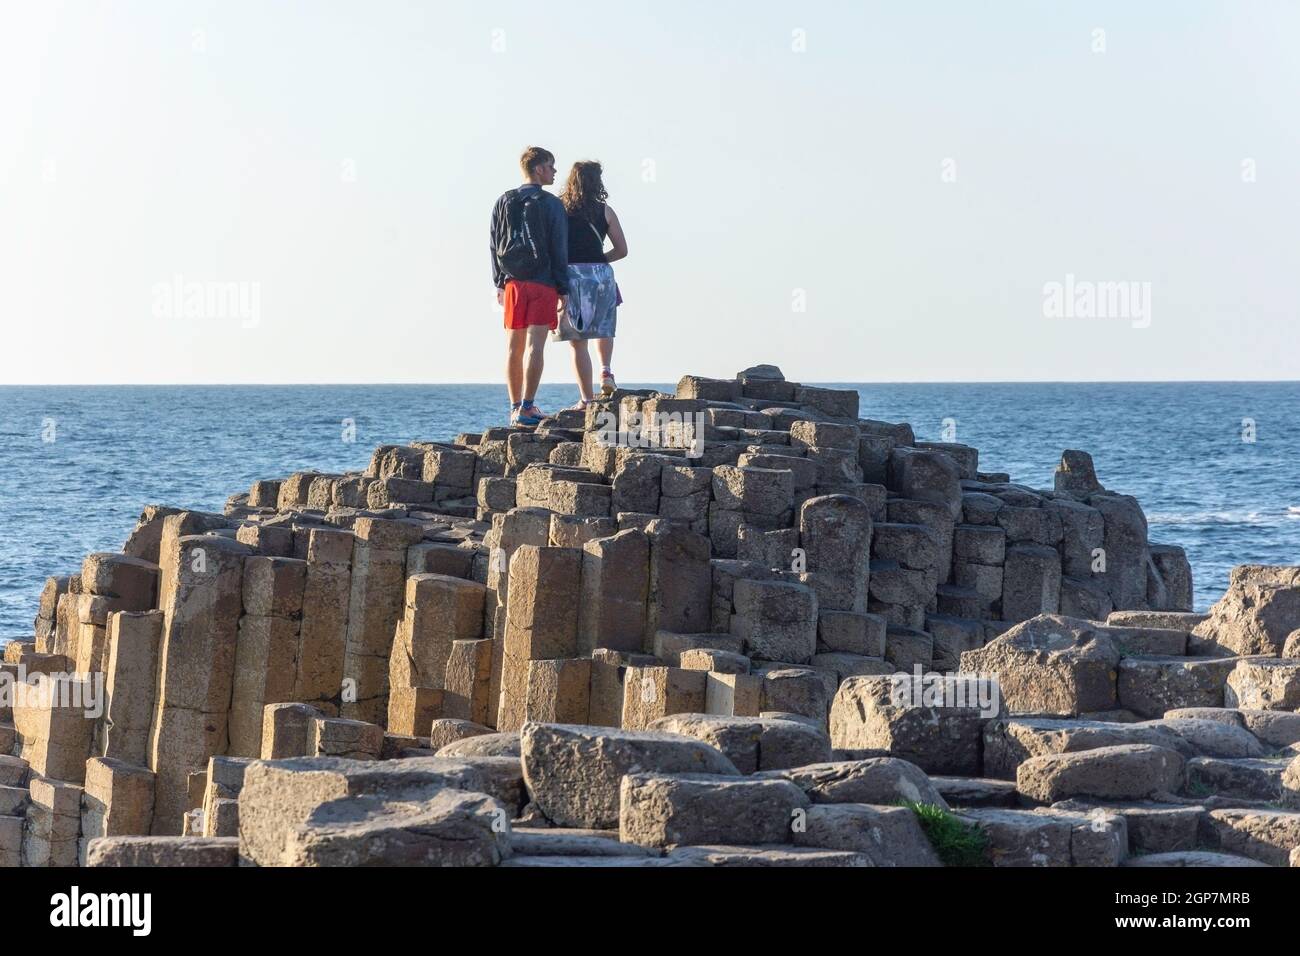 Junges Paar, das auf Basaltsäulen steht, The Giant's Causeway, Causeway Coast, in der Nähe von Bushmills, County Antrim, Nordirland, Vereinigtes Königreich Stockfoto